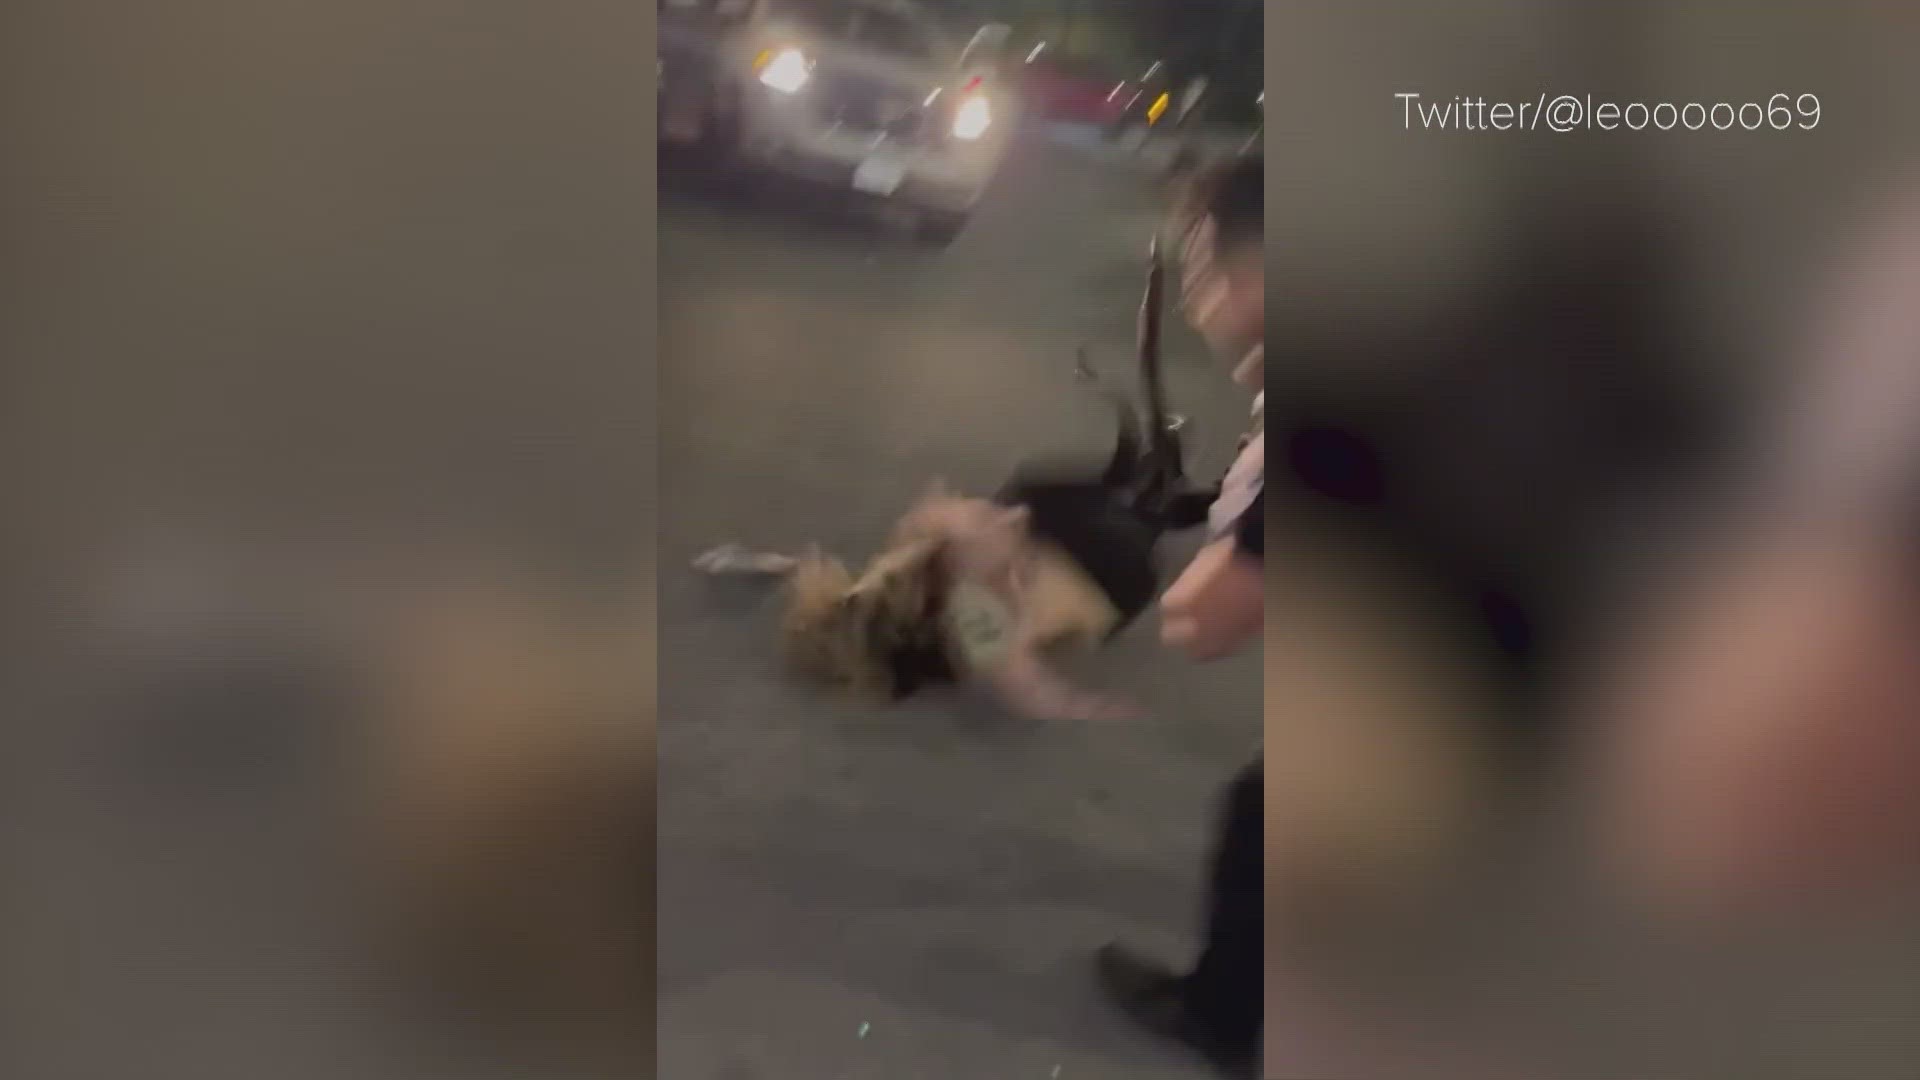 San Antonio brawl Video shows security slamming woman to ground kens5